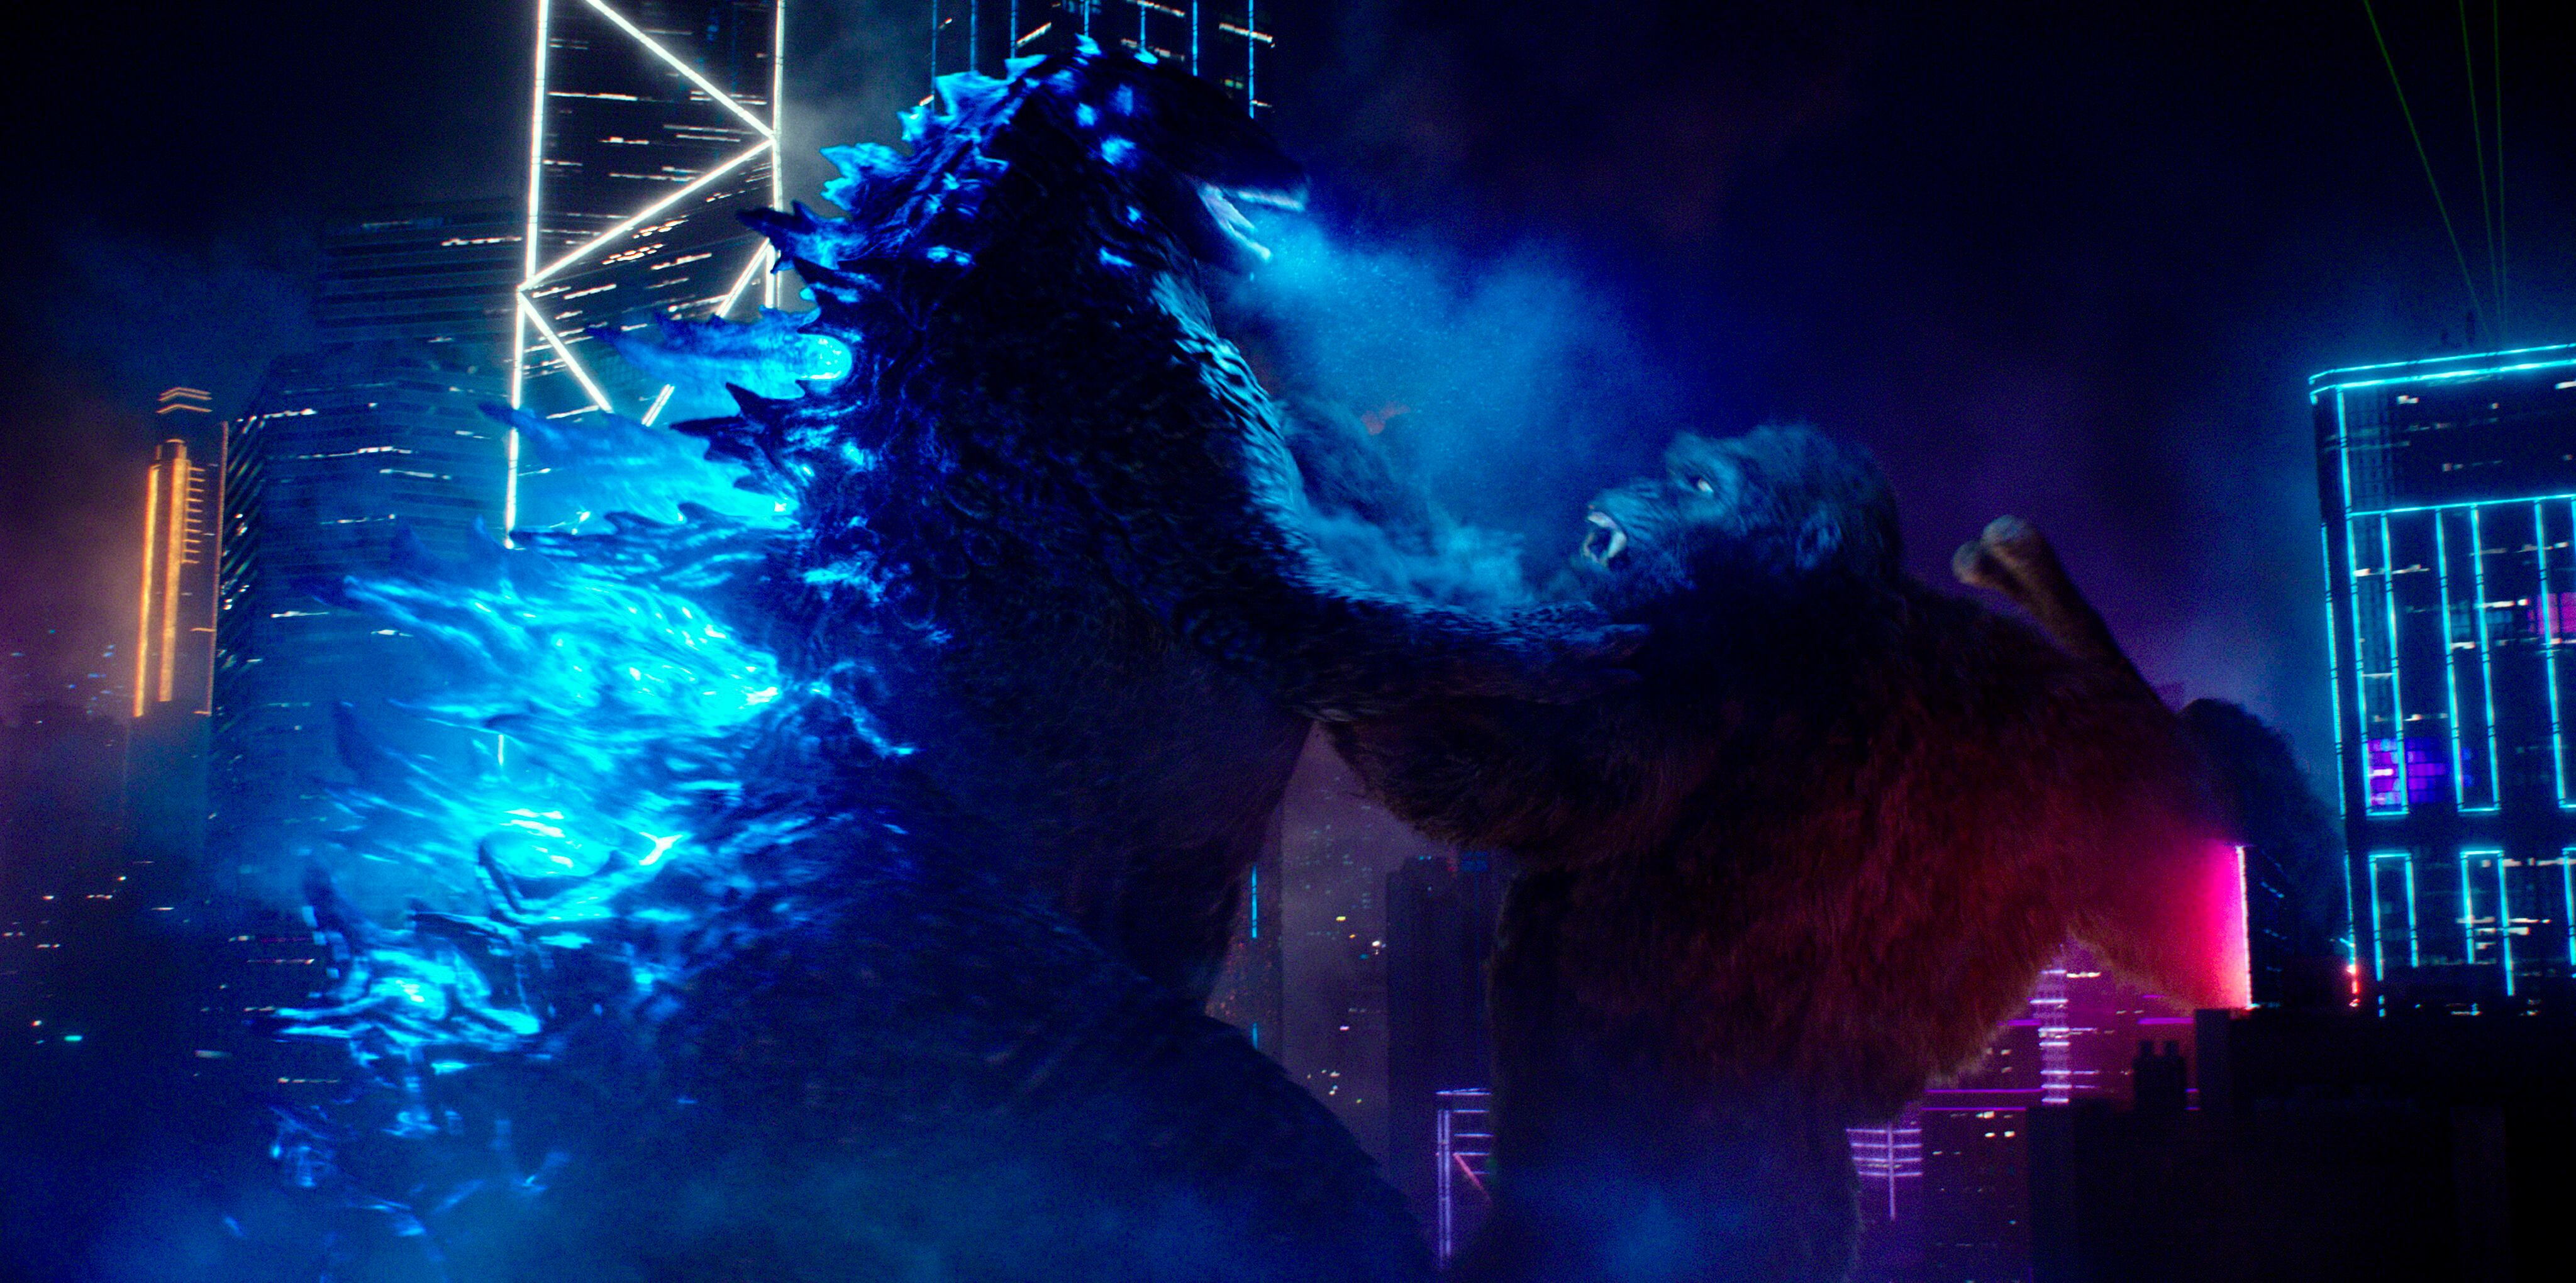 King Kong no ganó, tampoco Godzilla: las taquillas fueron las vencedoras